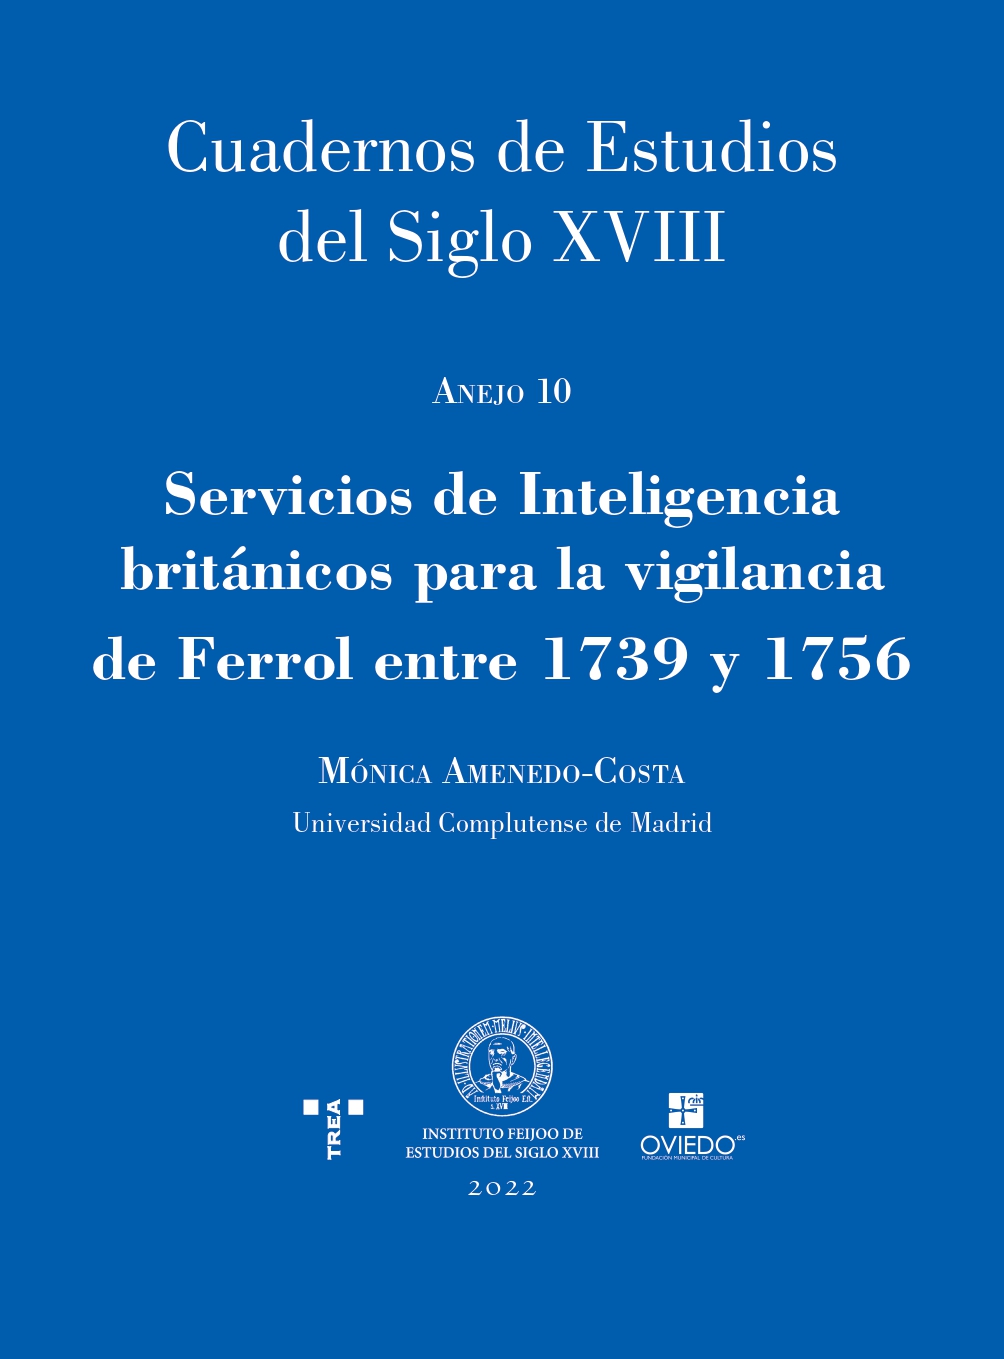 Imagen de portada del libro Servicios de Inteligencia británicos para la vigilancia de Ferrol entre 1739 y 1756